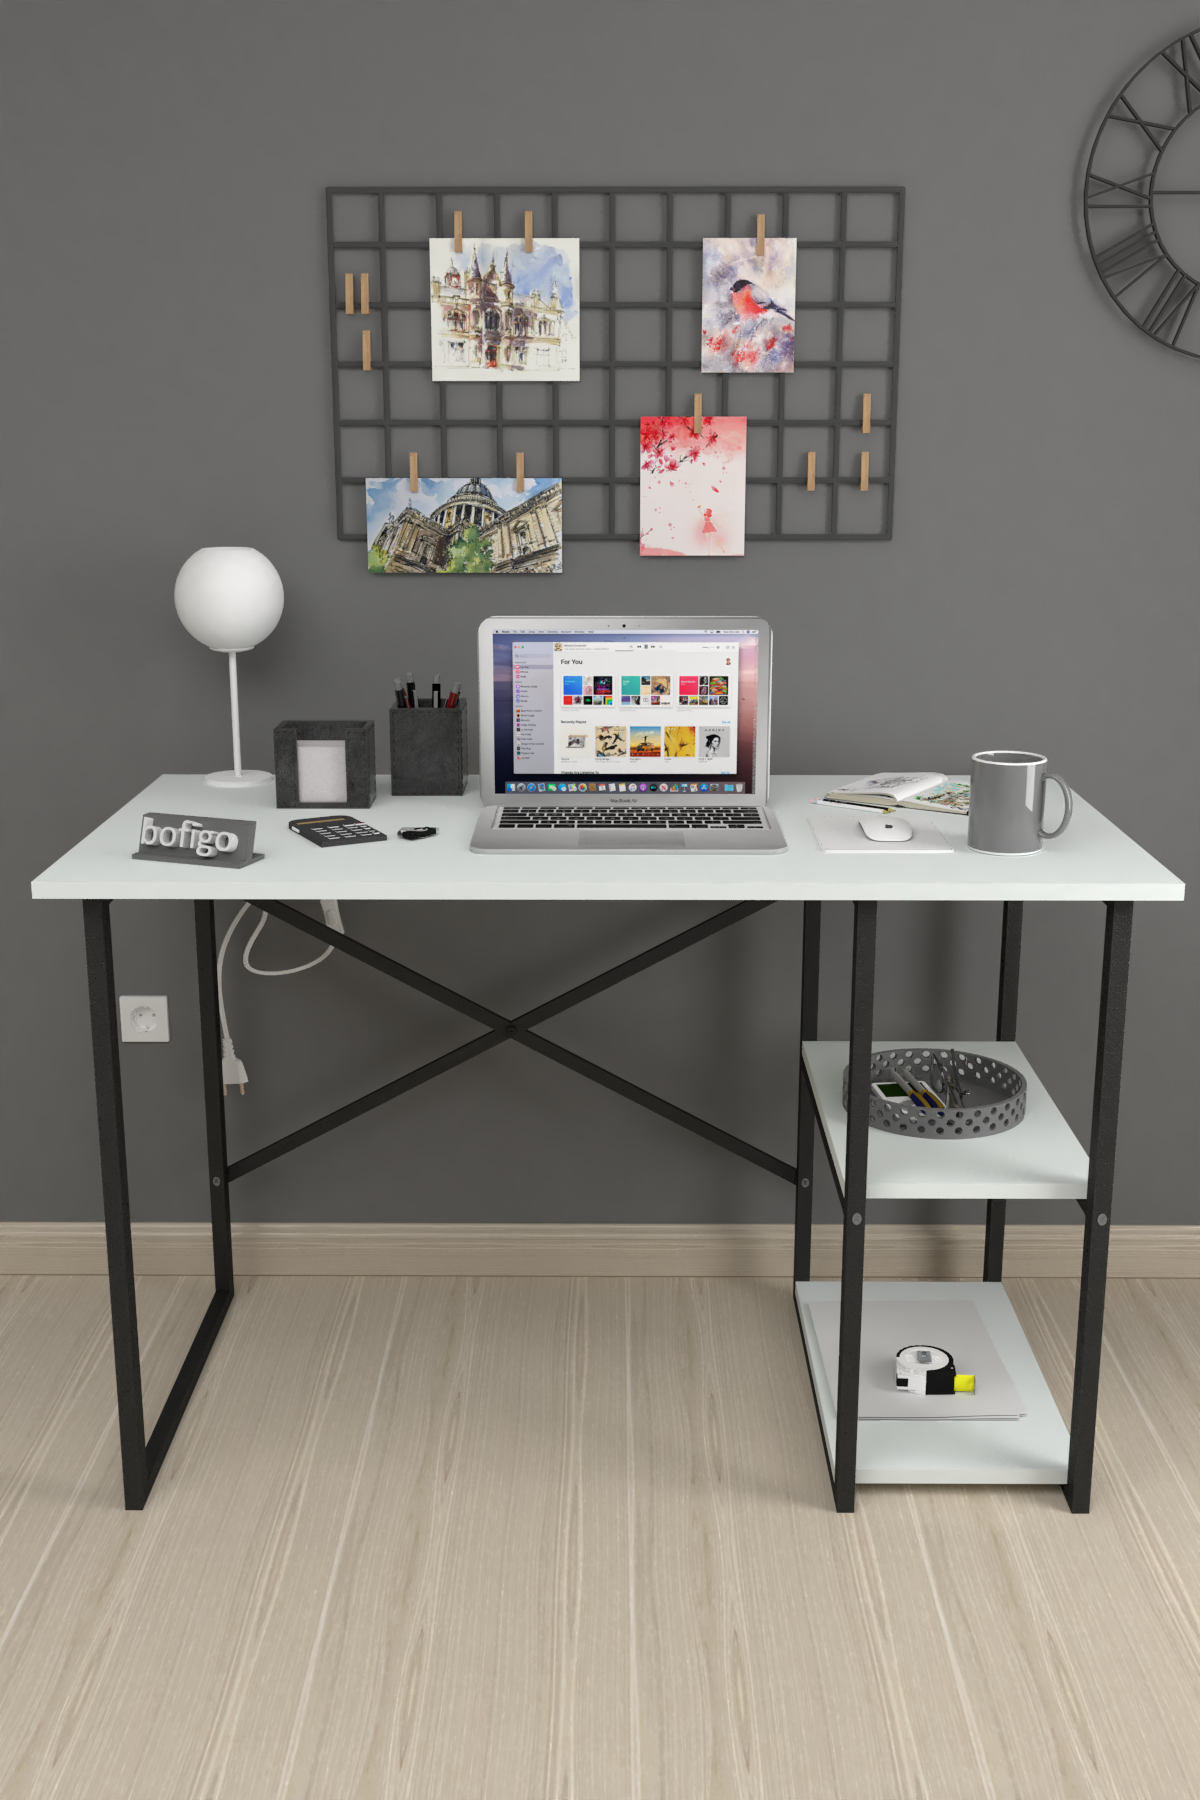 Bofigo Desk with 2 Shelves 60x120 cm White